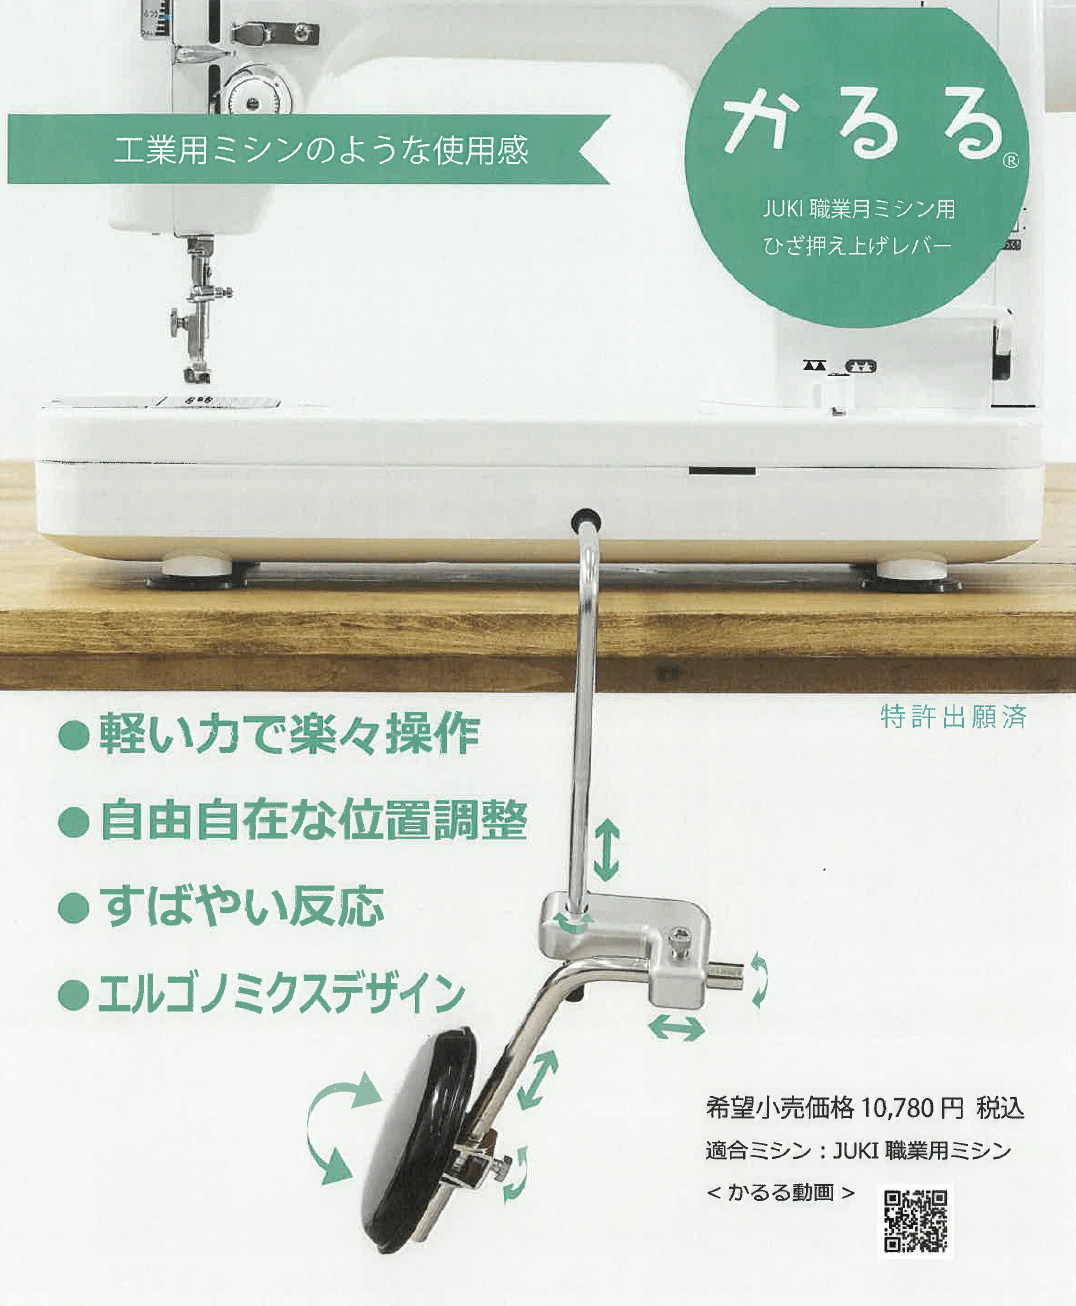 【新発売】 JUKI 職業用ミシン専用 ひざ押え上げレバー 「かるる」